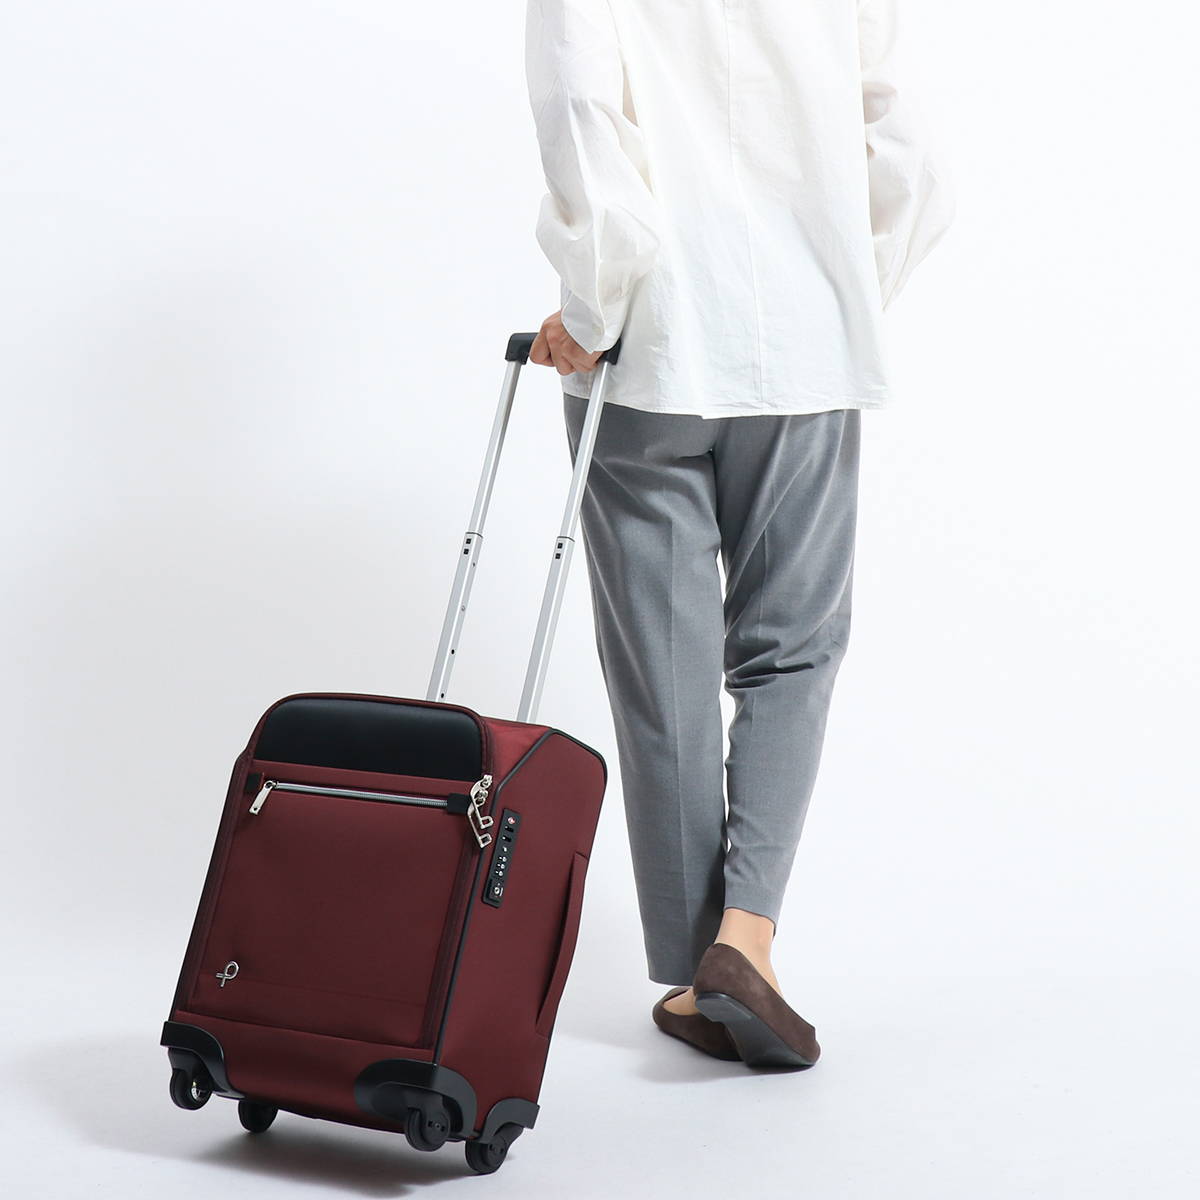 プロテカ スーツケース 日本製 マックスパスソフト3 機内持込可 23L 2kg 1~2泊 コインロッカーサイズ ストッパー付 12836 -  zkgmu.kz